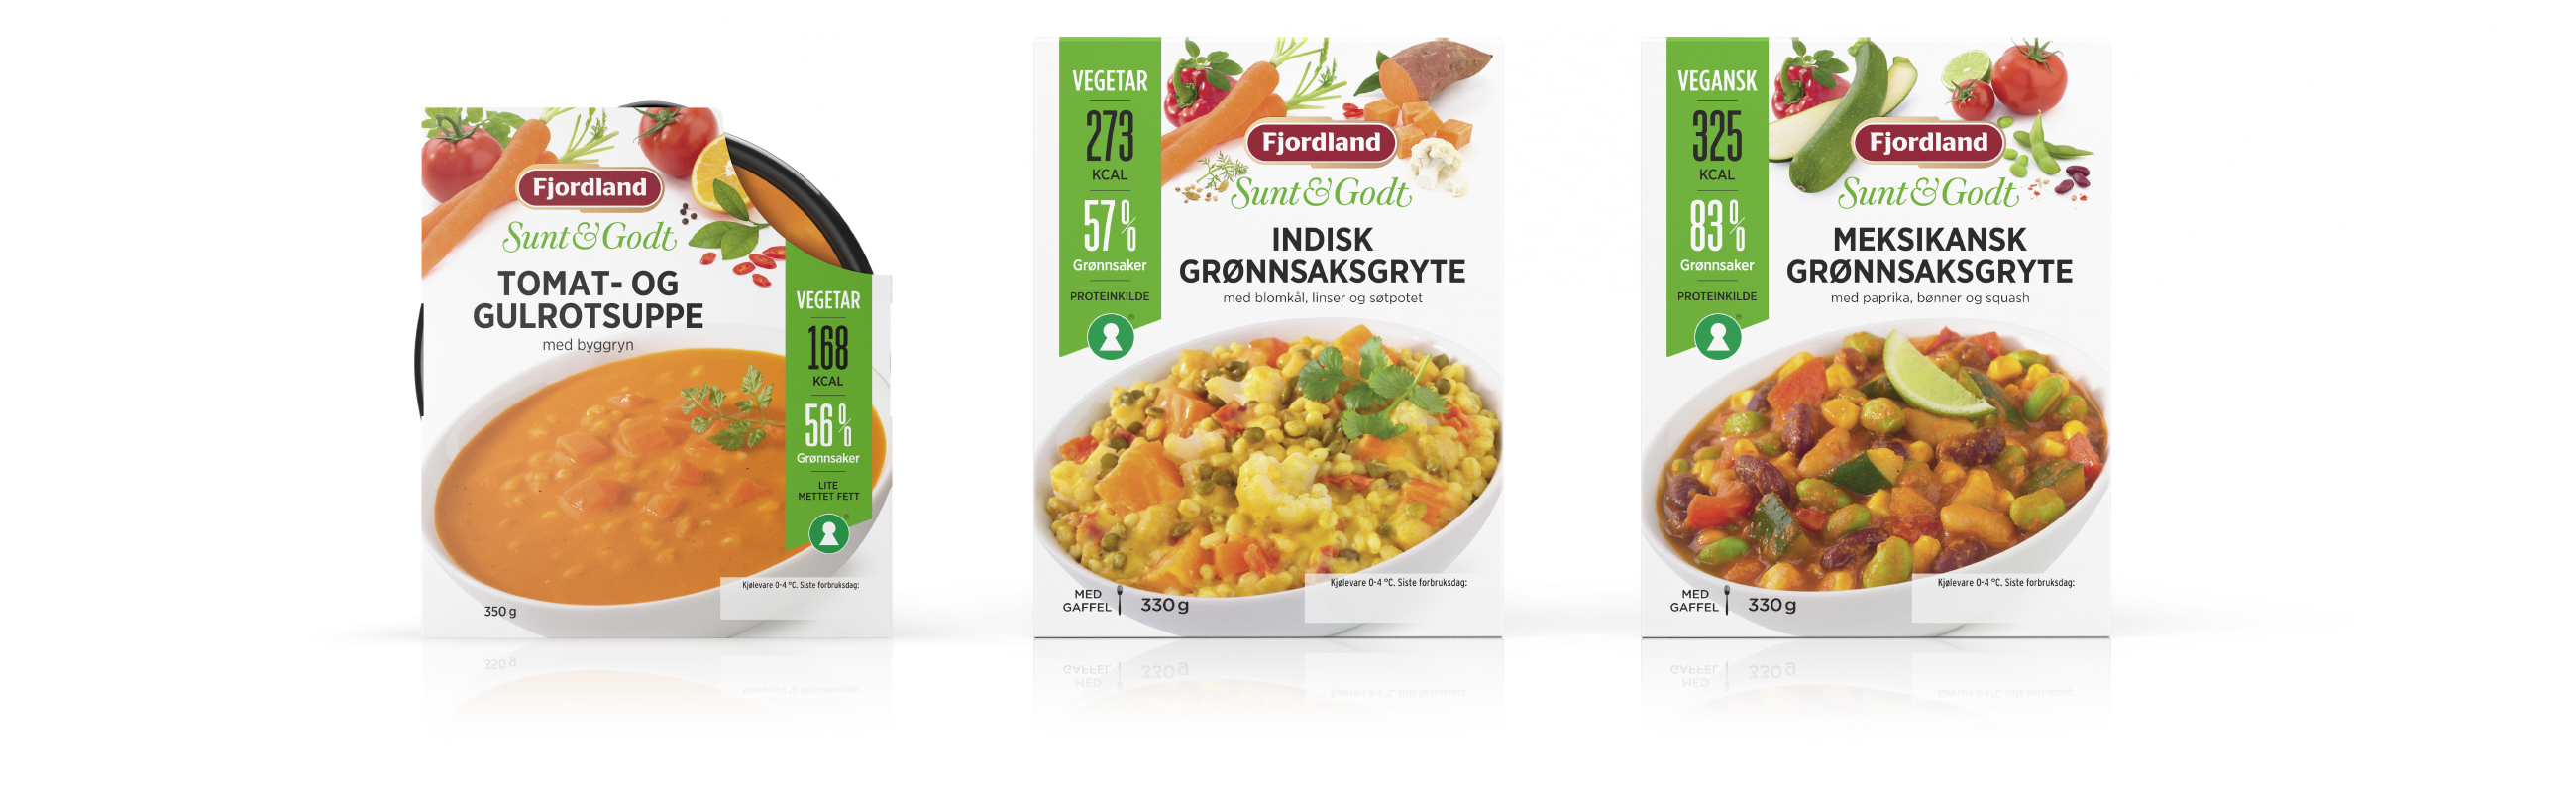 Fjordland Sunt & Godt Tomat & gulrotsuppe, indisk og meksikansk grønnsaksgryte. Emballasje packaging design.